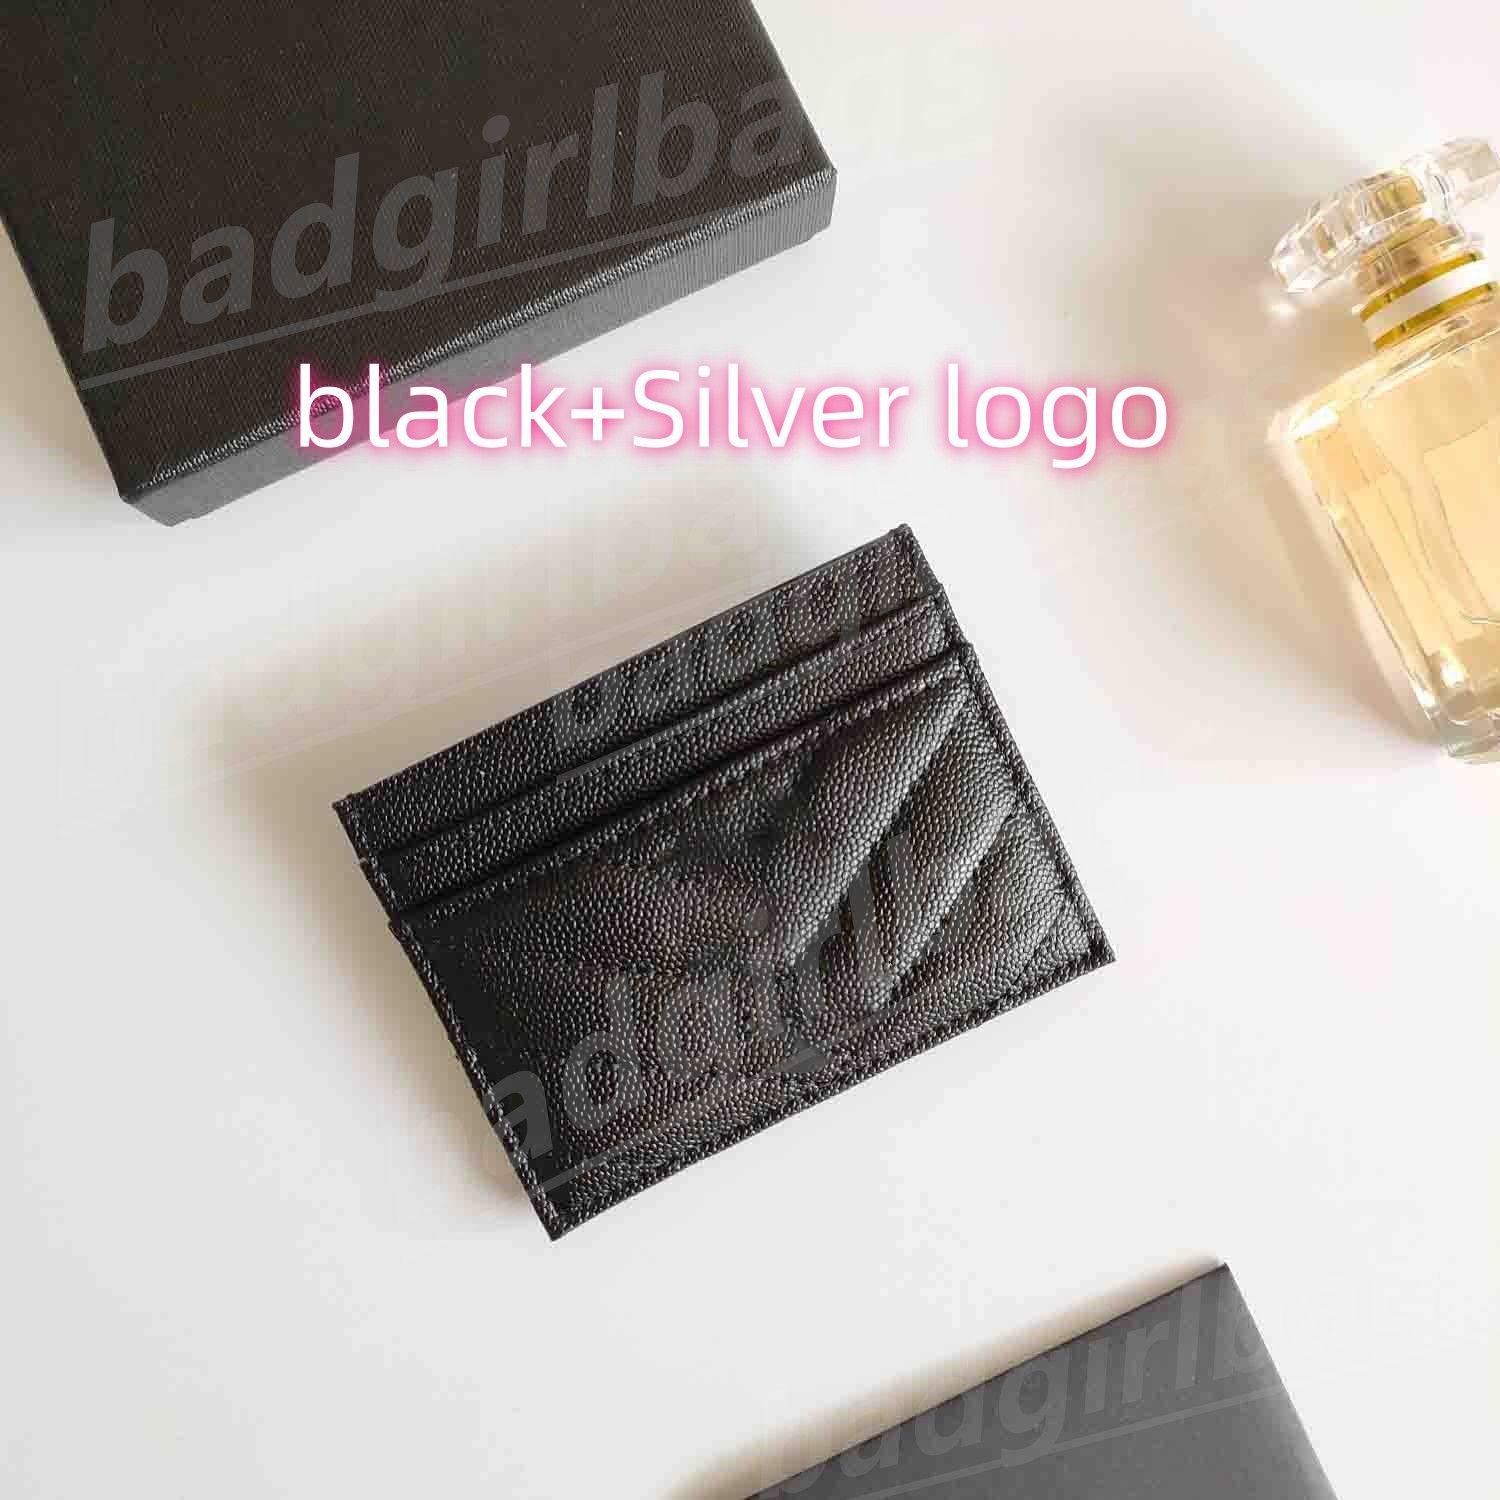 1-black+Silver logo